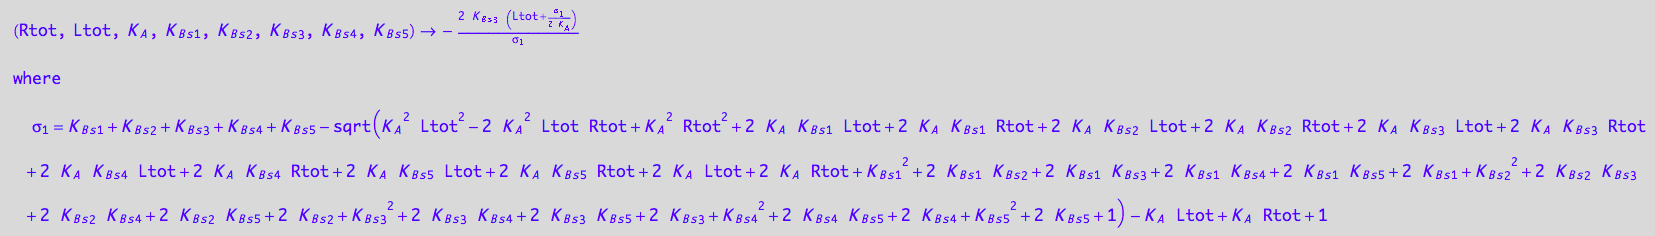 (Rtot, Ltot, K_A, K_B_s_1, K_B_s_2, K_B_s_3, K_B_s_4, K_B_s_5) -> -(2*K_B_s_3*(Ltot + (K_B_s_1 + K_B_s_2 + K_B_s_3 + K_B_s_4 + K_B_s_5 - (K_A^2*Ltot^2 - 2*K_A^2*Ltot*Rtot + K_A^2*Rtot^2 + 2*K_A*K_B_s_1*Ltot + 2*K_A*K_B_s_1*Rtot + 2*K_A*K_B_s_2*Ltot + 2*K_A*K_B_s_2*Rtot + 2*K_A*K_B_s_3*Ltot + 2*K_A*K_B_s_3*Rtot + 2*K_A*K_B_s_4*Ltot + 2*K_A*K_B_s_4*Rtot + 2*K_A*K_B_s_5*Ltot + 2*K_A*K_B_s_5*Rtot + 2*K_A*Ltot + 2*K_A*Rtot + K_B_s_1^2 + 2*K_B_s_1*K_B_s_2 + 2*K_B_s_1*K_B_s_3 + 2*K_B_s_1*K_B_s_4 + 2*K_B_s_1*K_B_s_5 + 2*K_B_s_1 + K_B_s_2^2 + 2*K_B_s_2*K_B_s_3 + 2*K_B_s_2*K_B_s_4 + 2*K_B_s_2*K_B_s_5 + 2*K_B_s_2 + K_B_s_3^2 + 2*K_B_s_3*K_B_s_4 + 2*K_B_s_3*K_B_s_5 + 2*K_B_s_3 + K_B_s_4^2 + 2*K_B_s_4*K_B_s_5 + 2*K_B_s_4 + K_B_s_5^2 + 2*K_B_s_5 + 1)^(1/2) - K_A*Ltot + K_A*Rtot + 1)/(2*K_A)))/(K_B_s_1 + K_B_s_2 + K_B_s_3 + K_B_s_4 + K_B_s_5 - (K_A^2*Ltot^2 - 2*K_A^2*Ltot*Rtot + K_A^2*Rtot^2 + 2*K_A*K_B_s_1*Ltot + 2*K_A*K_B_s_1*Rtot + 2*K_A*K_B_s_2*Ltot + 2*K_A*K_B_s_2*Rtot + 2*K_A*K_B_s_3*Ltot + 2*K_A*K_B_s_3*Rtot + 2*K_A*K_B_s_4*Ltot + 2*K_A*K_B_s_4*Rtot + 2*K_A*K_B_s_5*Ltot + 2*K_A*K_B_s_5*Rtot + 2*K_A*Ltot + 2*K_A*Rtot + K_B_s_1^2 + 2*K_B_s_1*K_B_s_2 + 2*K_B_s_1*K_B_s_3 + 2*K_B_s_1*K_B_s_4 + 2*K_B_s_1*K_B_s_5 + 2*K_B_s_1 + K_B_s_2^2 + 2*K_B_s_2*K_B_s_3 + 2*K_B_s_2*K_B_s_4 + 2*K_B_s_2*K_B_s_5 + 2*K_B_s_2 + K_B_s_3^2 + 2*K_B_s_3*K_B_s_4 + 2*K_B_s_3*K_B_s_5 + 2*K_B_s_3 + K_B_s_4^2 + 2*K_B_s_4*K_B_s_5 + 2*K_B_s_4 + K_B_s_5^2 + 2*K_B_s_5 + 1)^(1/2) - K_A*Ltot + K_A*Rtot + 1)